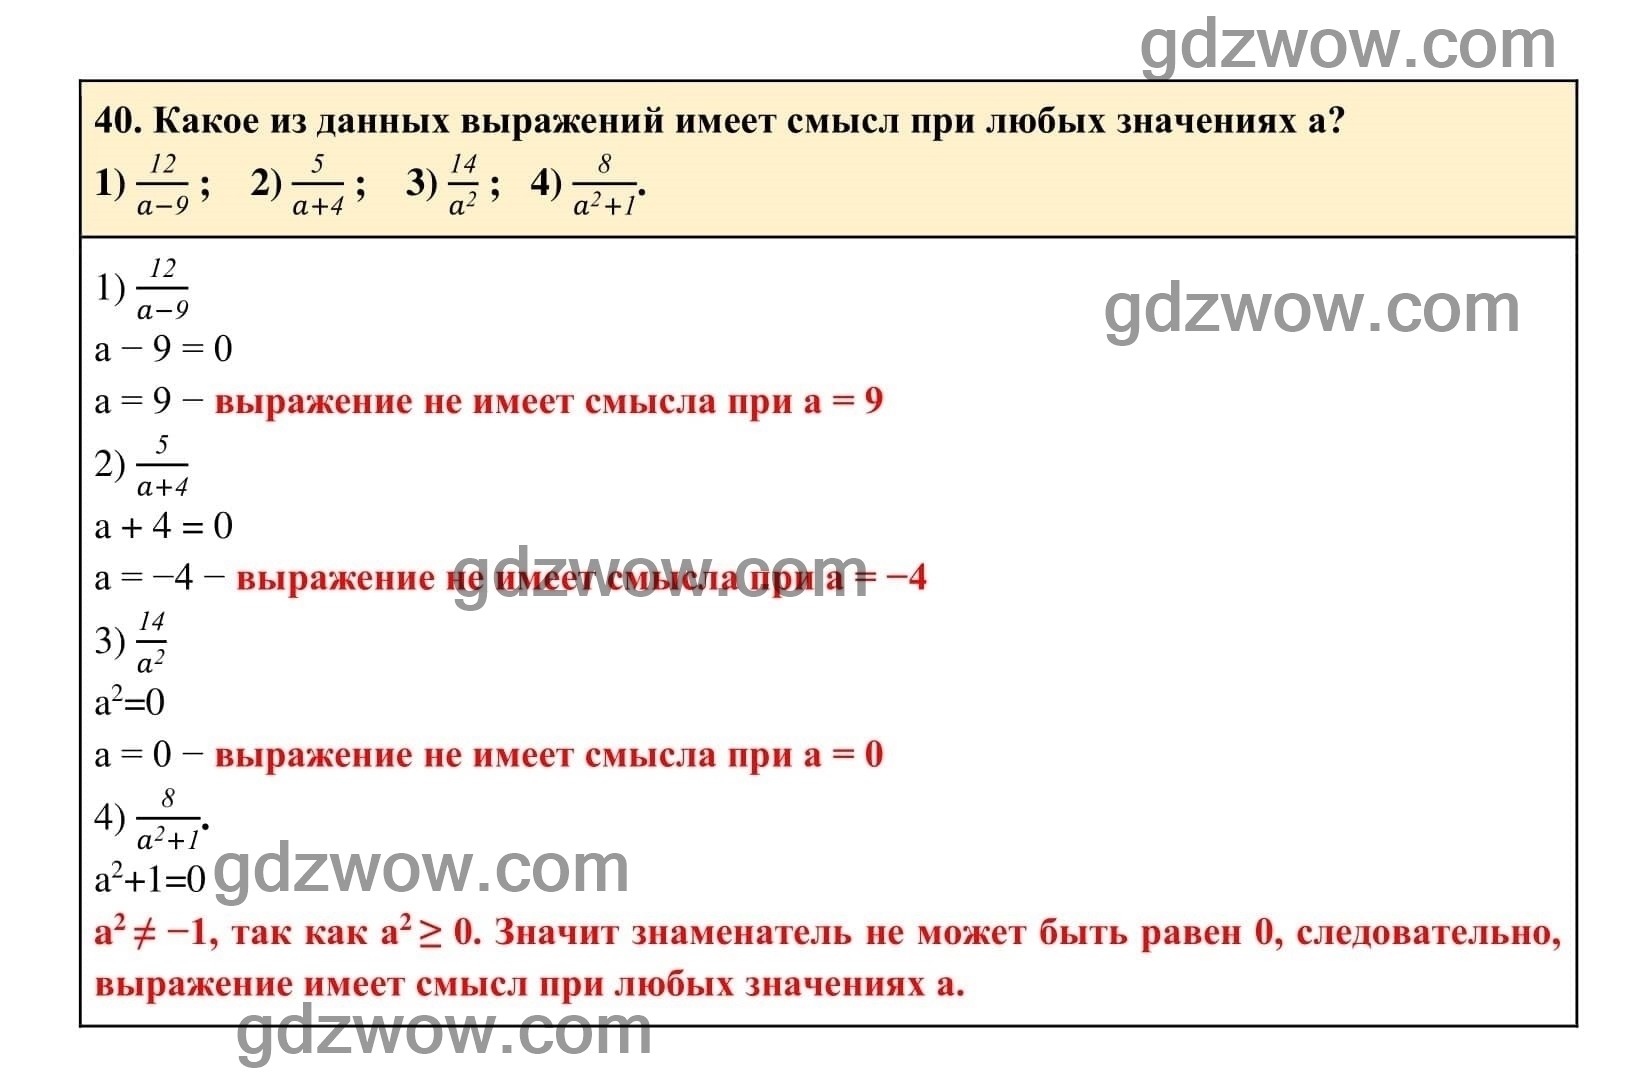 Упражнение 40 - ГДЗ по Алгебре 7 класс Учебник Макарычев (решебник) - GDZwow